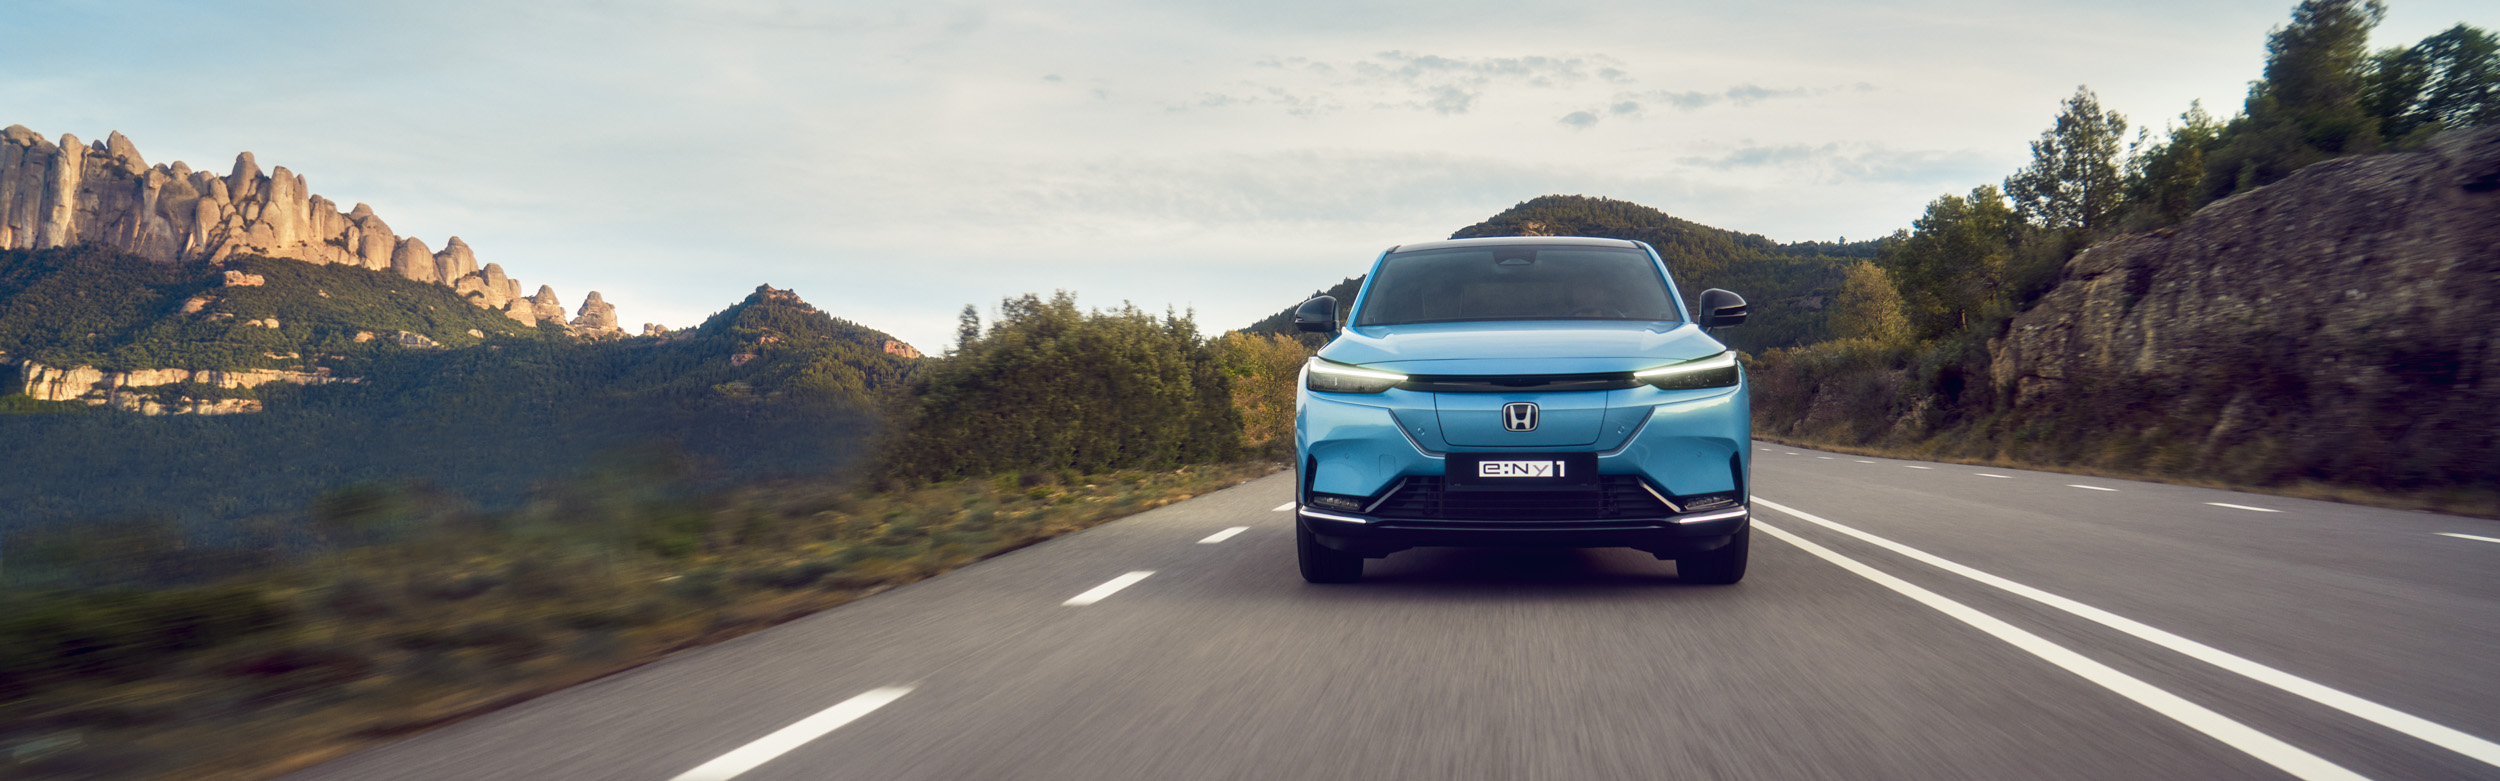 Frontansicht eines hellblauen Honda e:Ny1 auf einer Straße durch Hügel und Berge